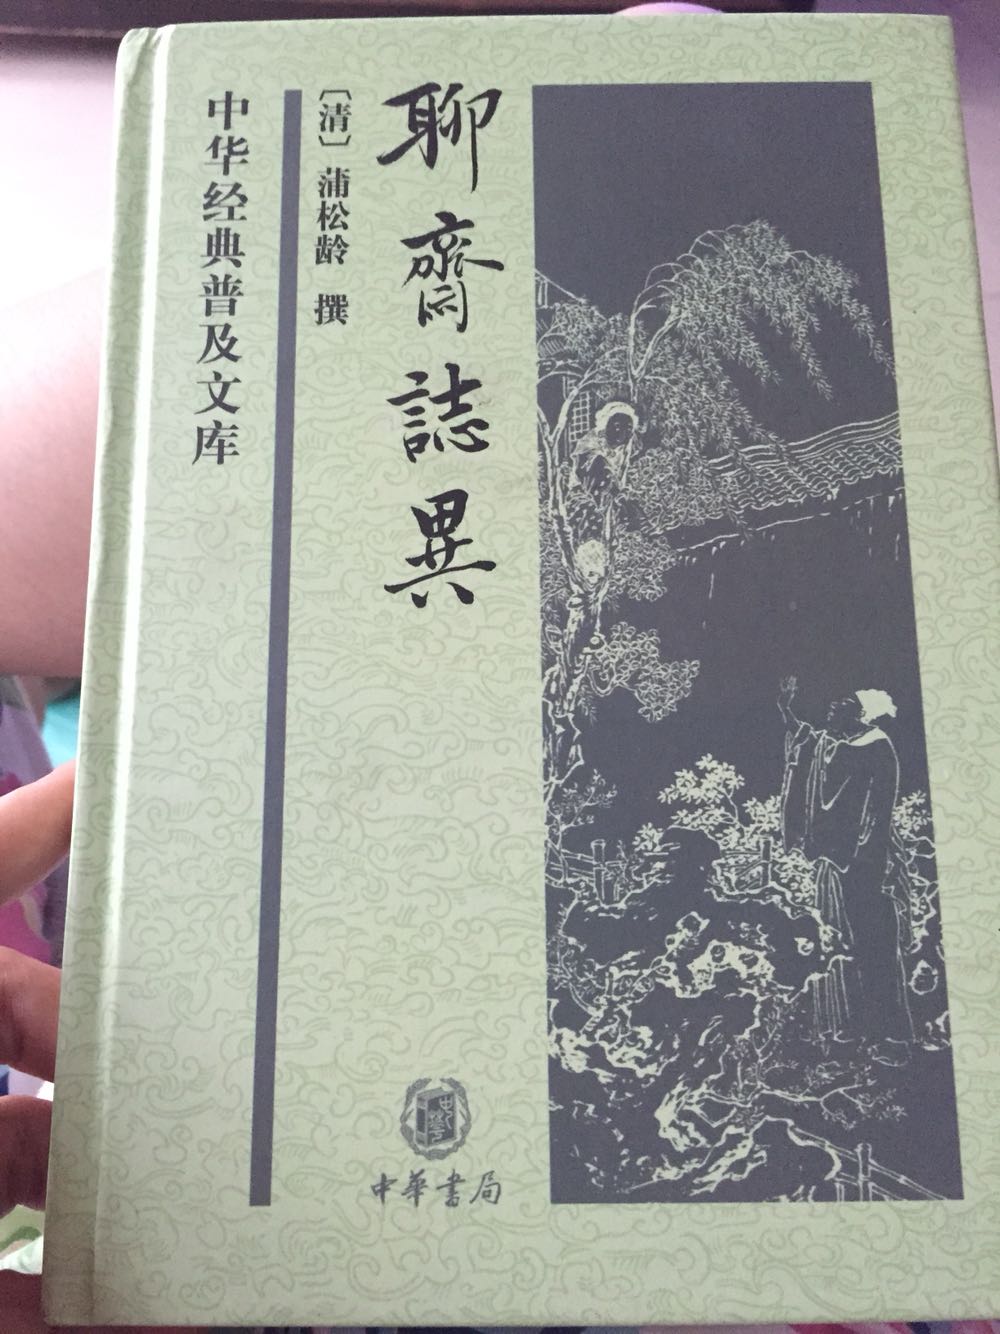 聊斋志异：中华经典普及文库，书本质量很好喔，拿在手上沉甸甸滴